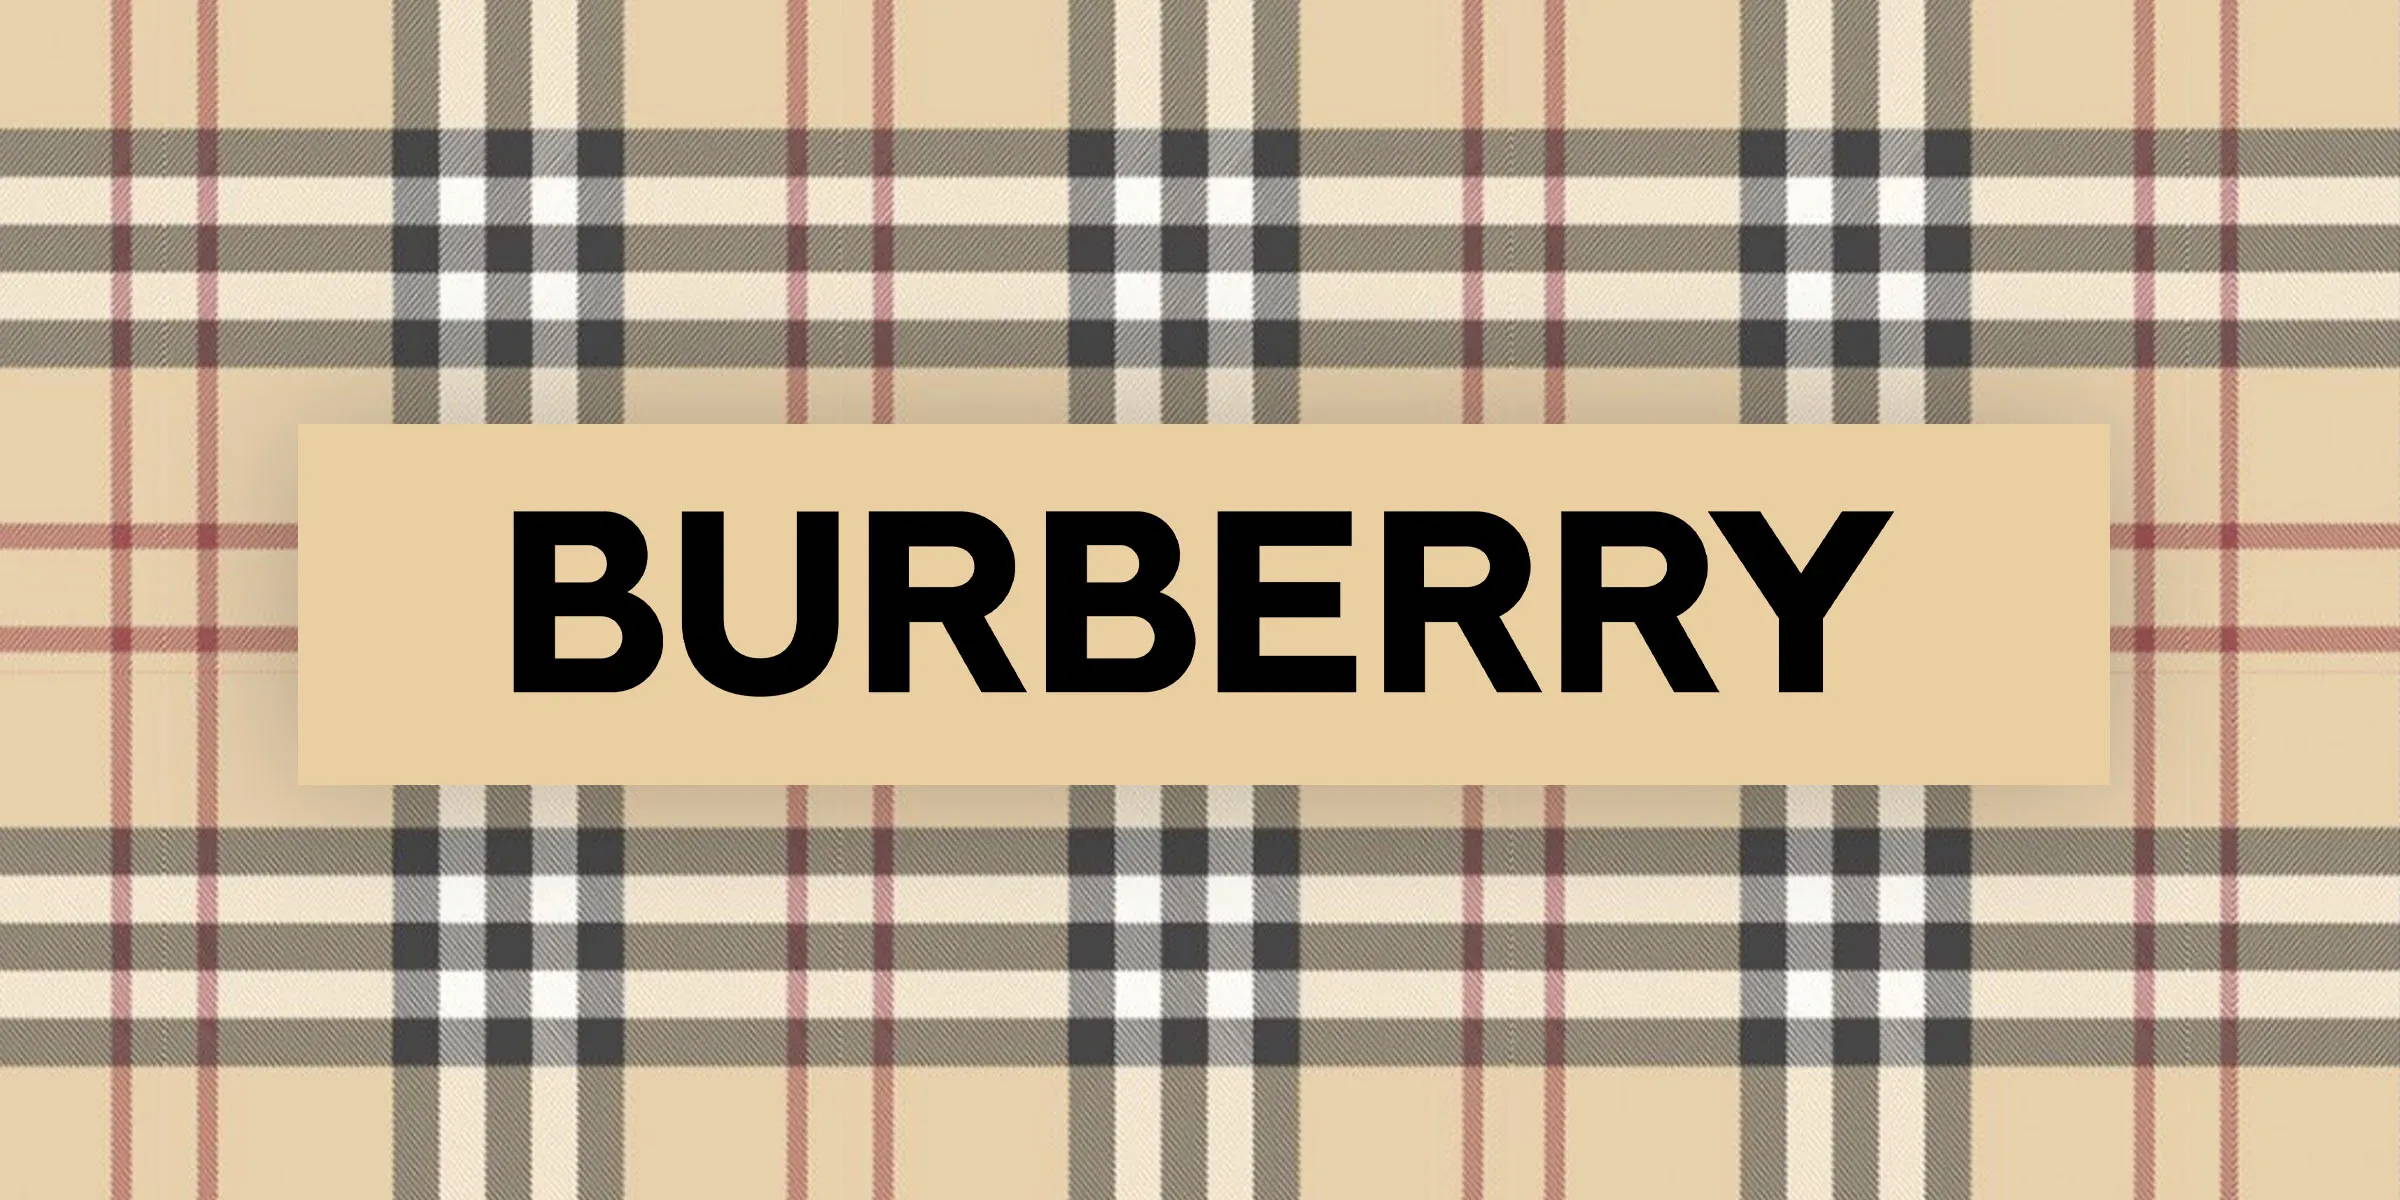 Burberry Frames